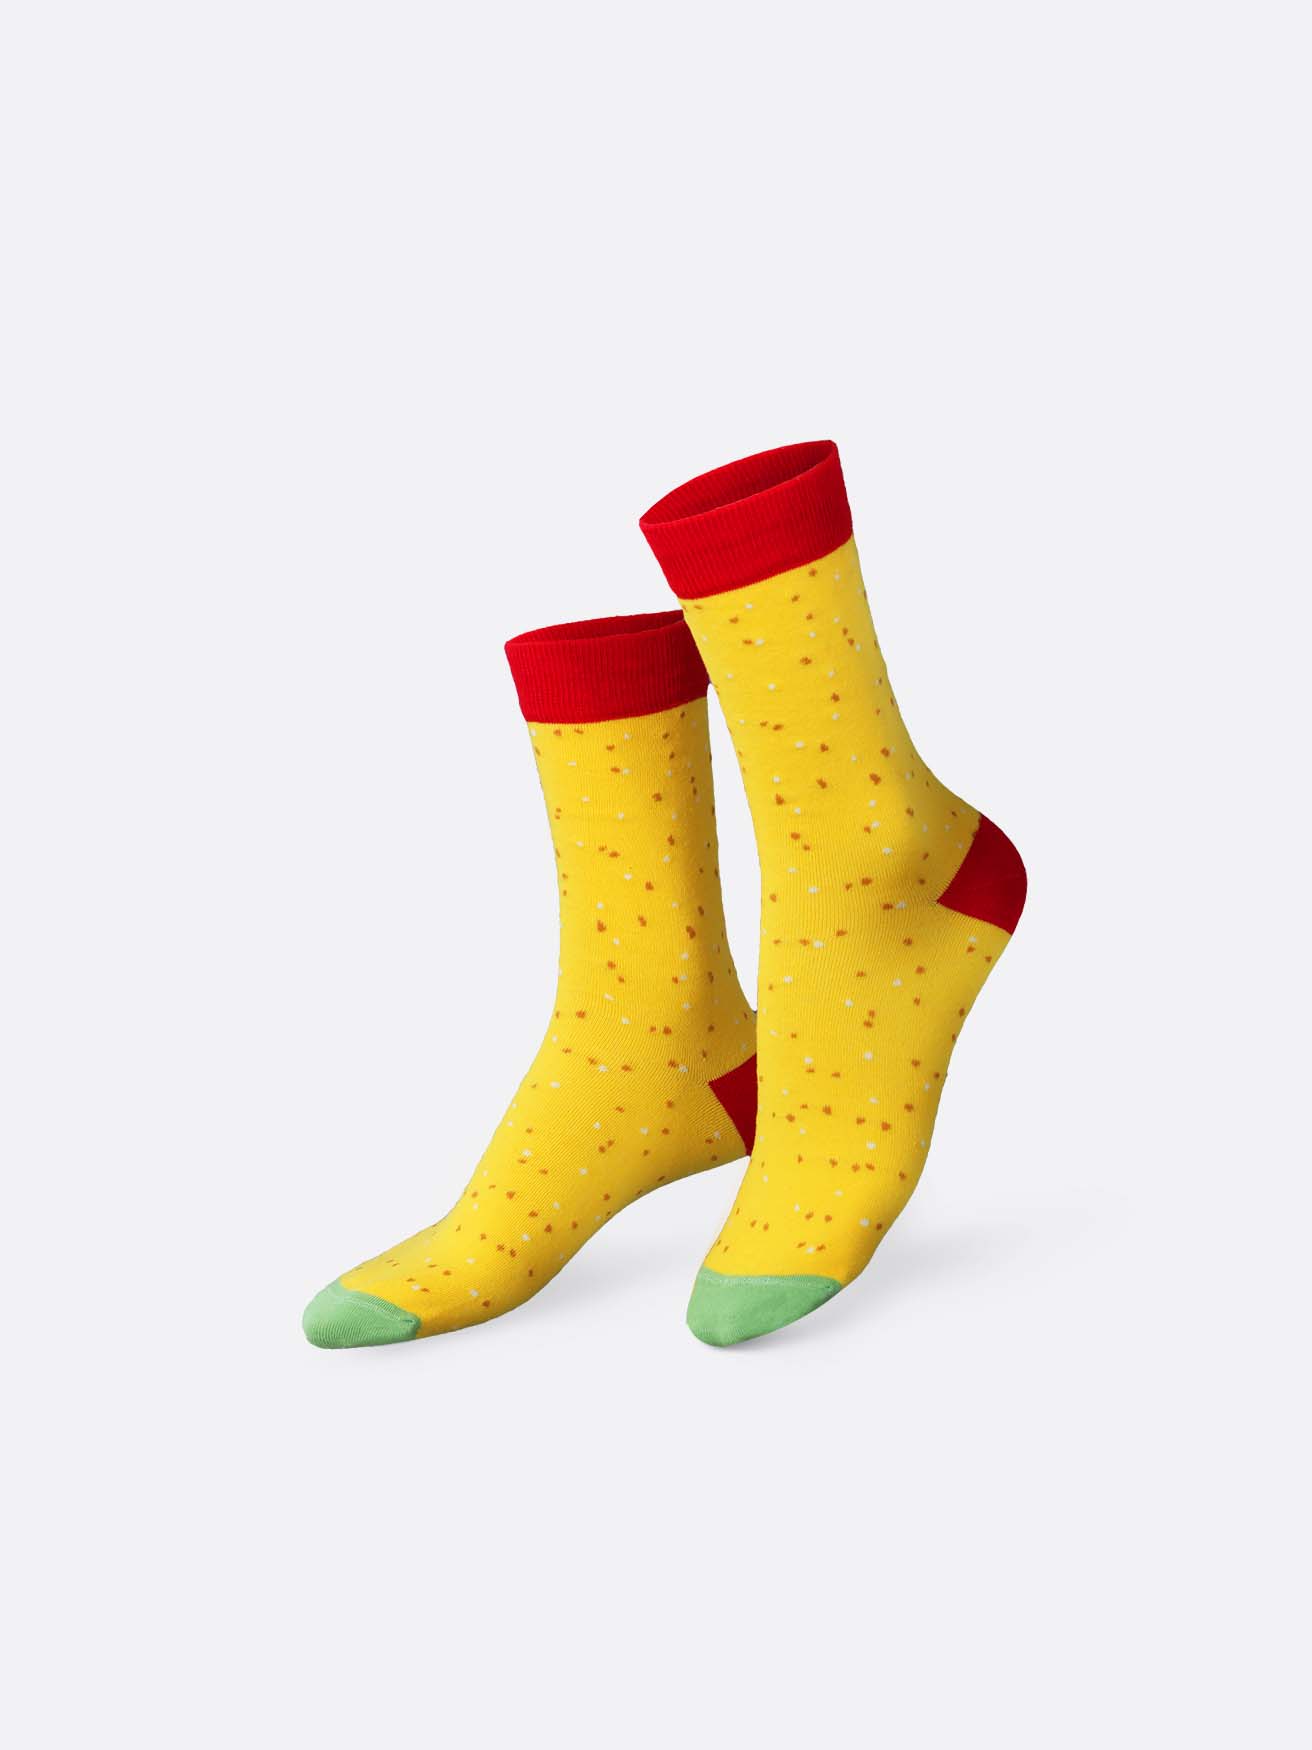 Tasty Nachos Set of 2 Socks